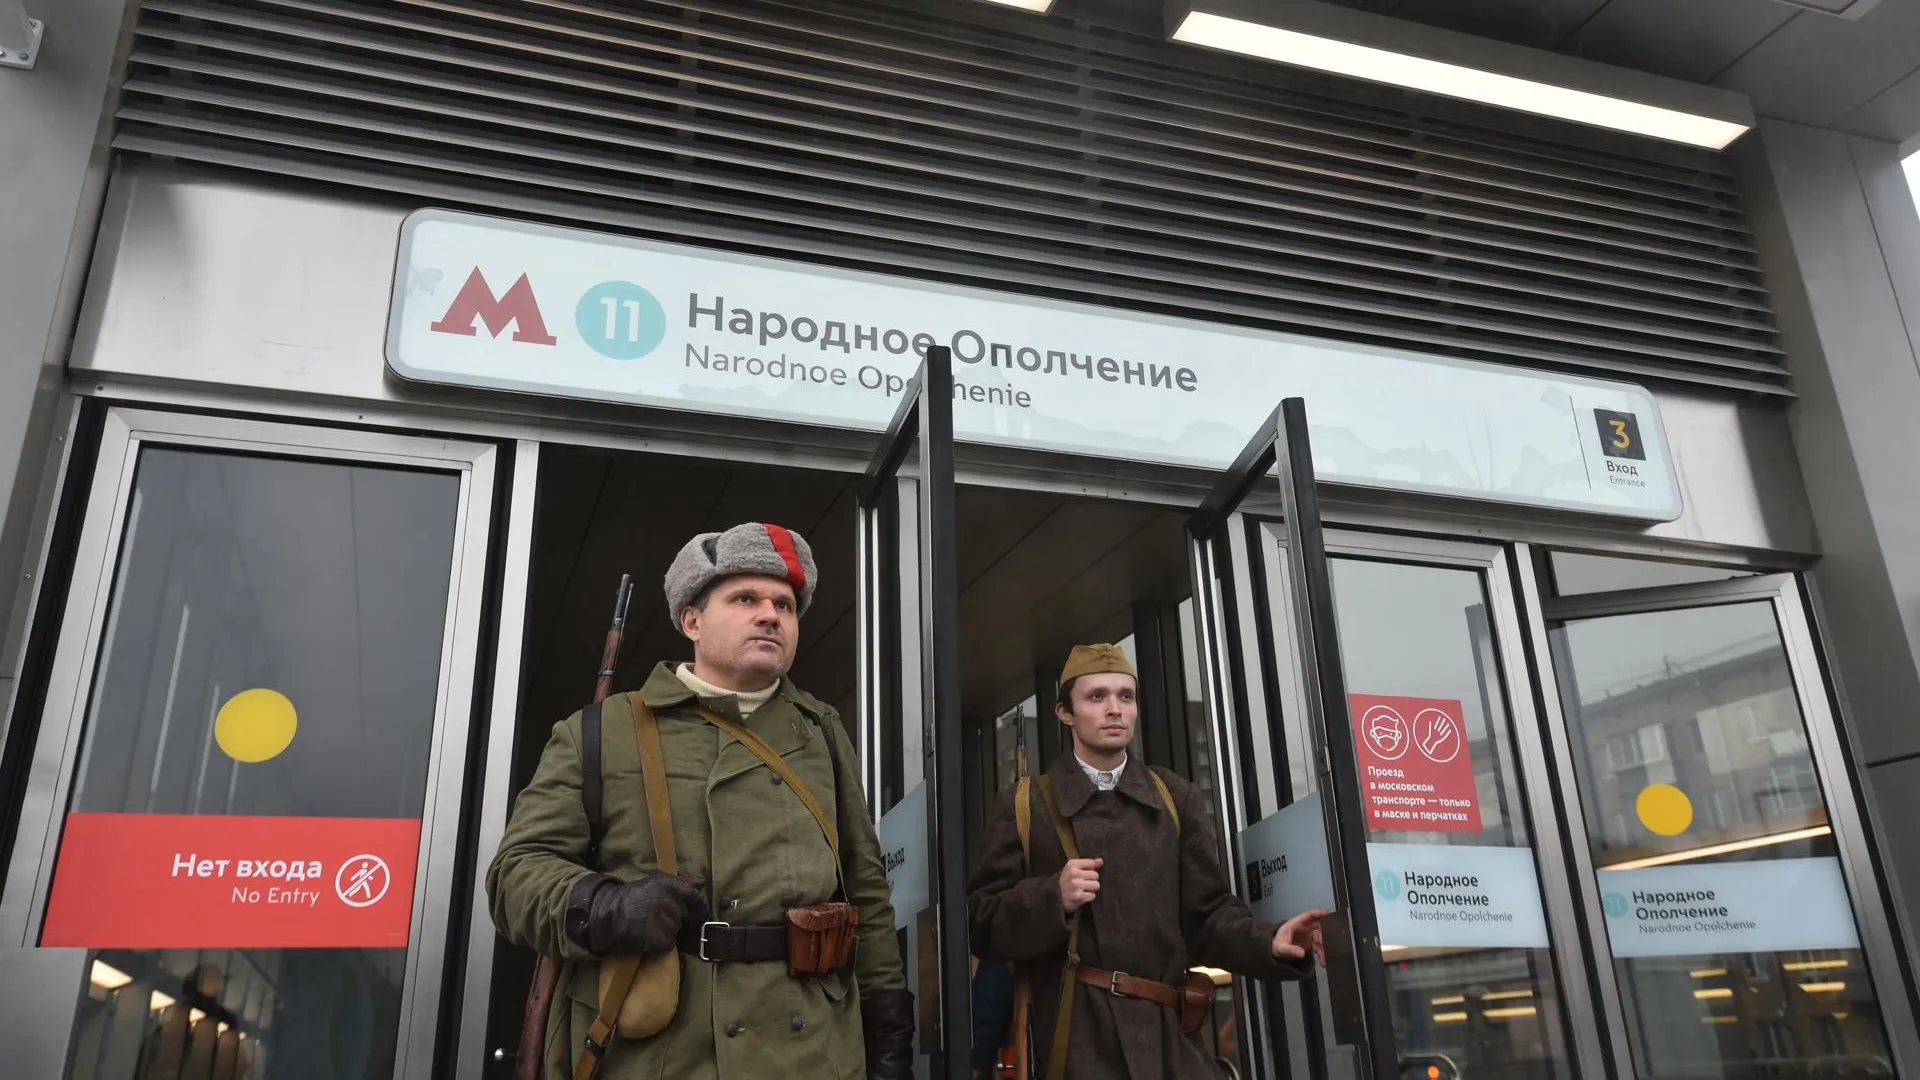 Открытие новых станций метро «Народное Ополчение» и «Мневники» в Москве